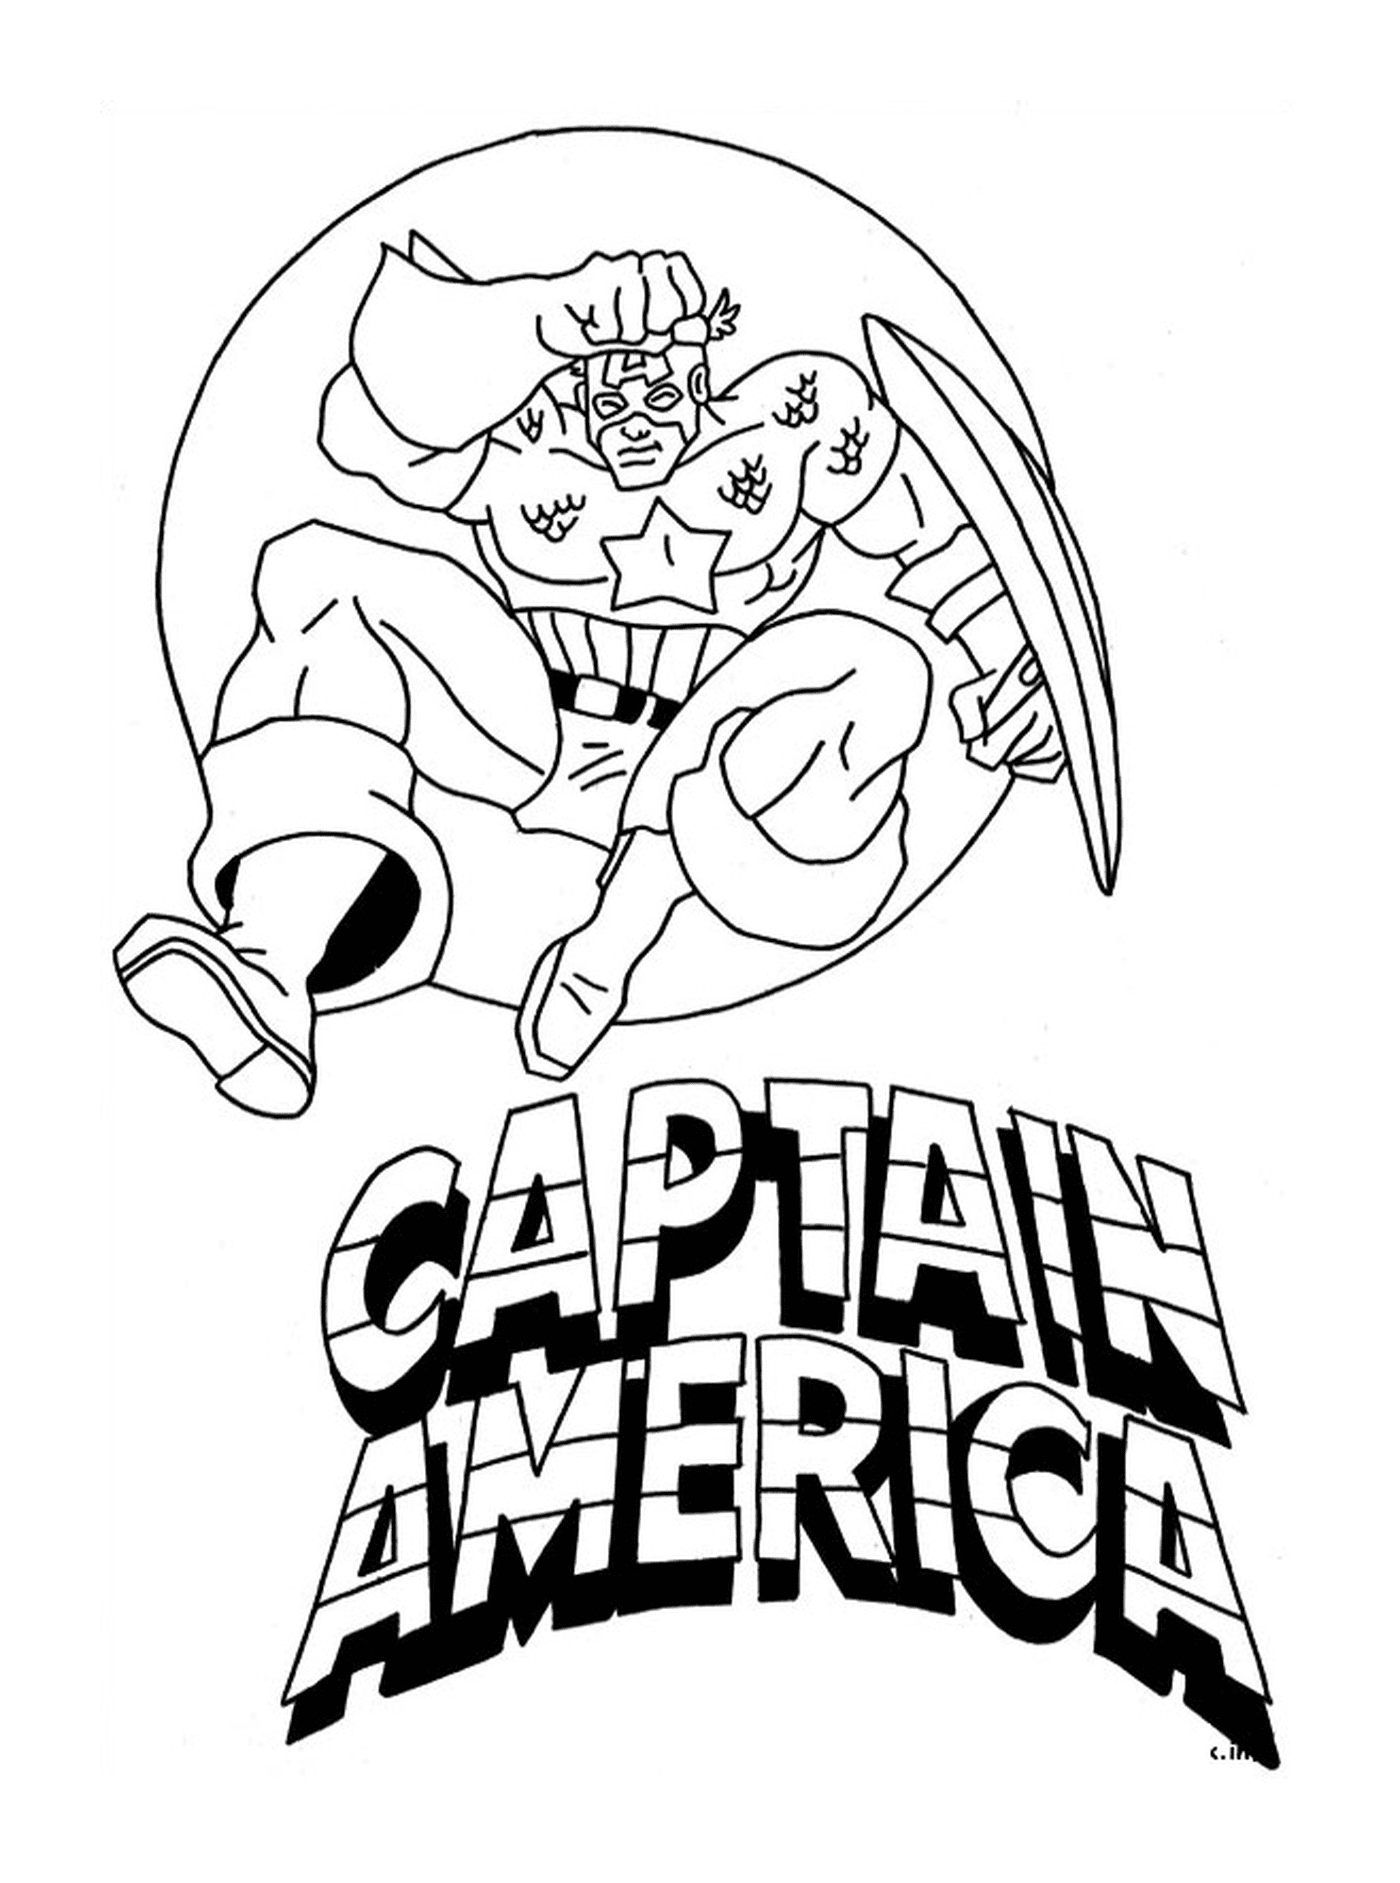  كابتن أمريكا مع شعار، صورة لكابتن أمريكا 